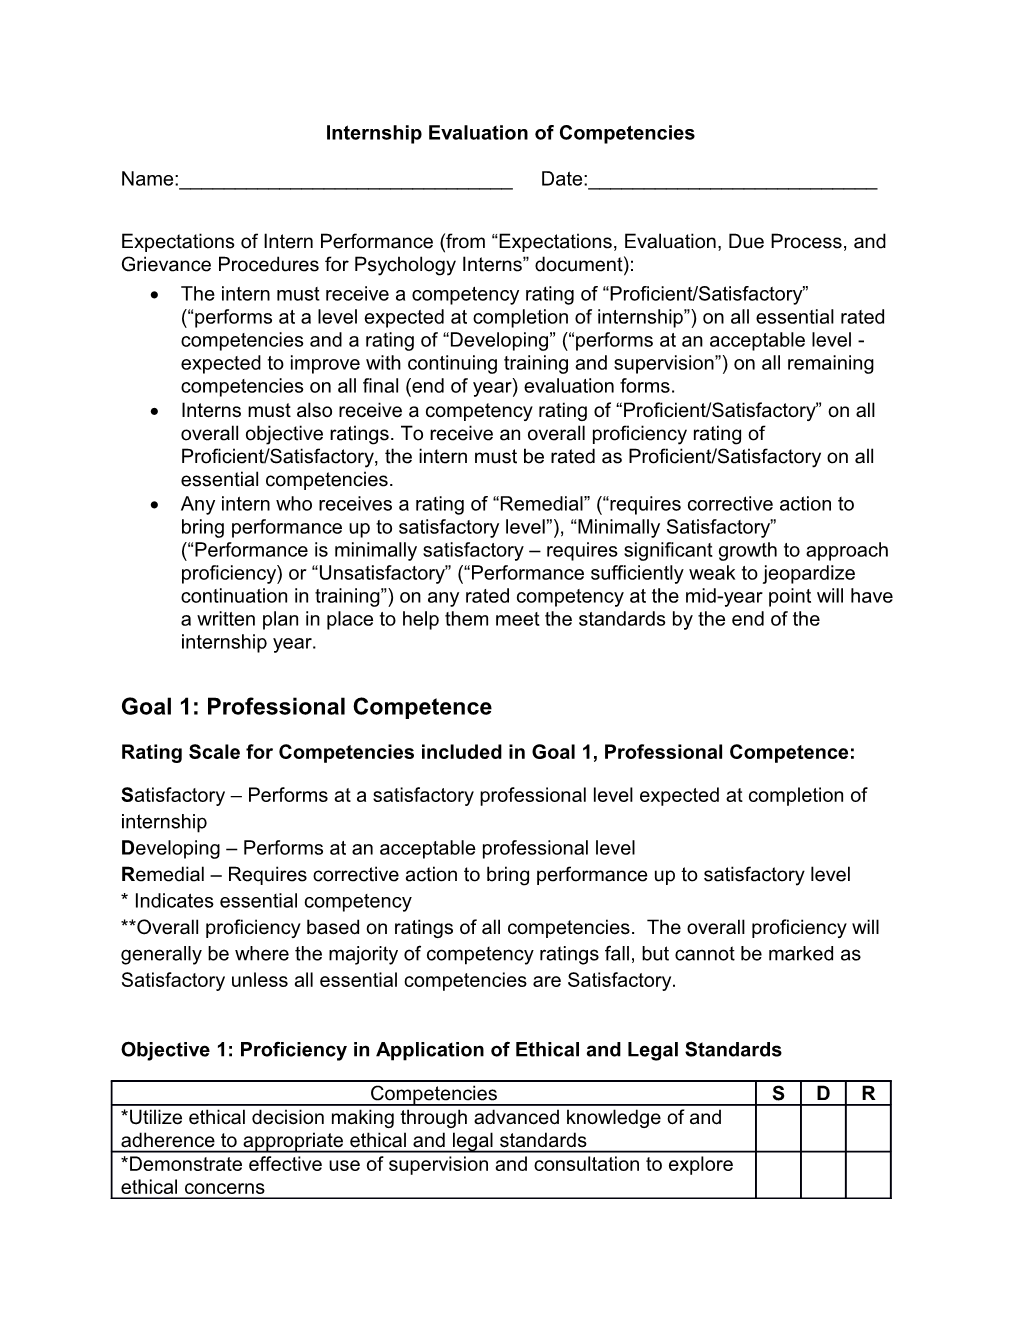 Internship Evaluation of Competencies